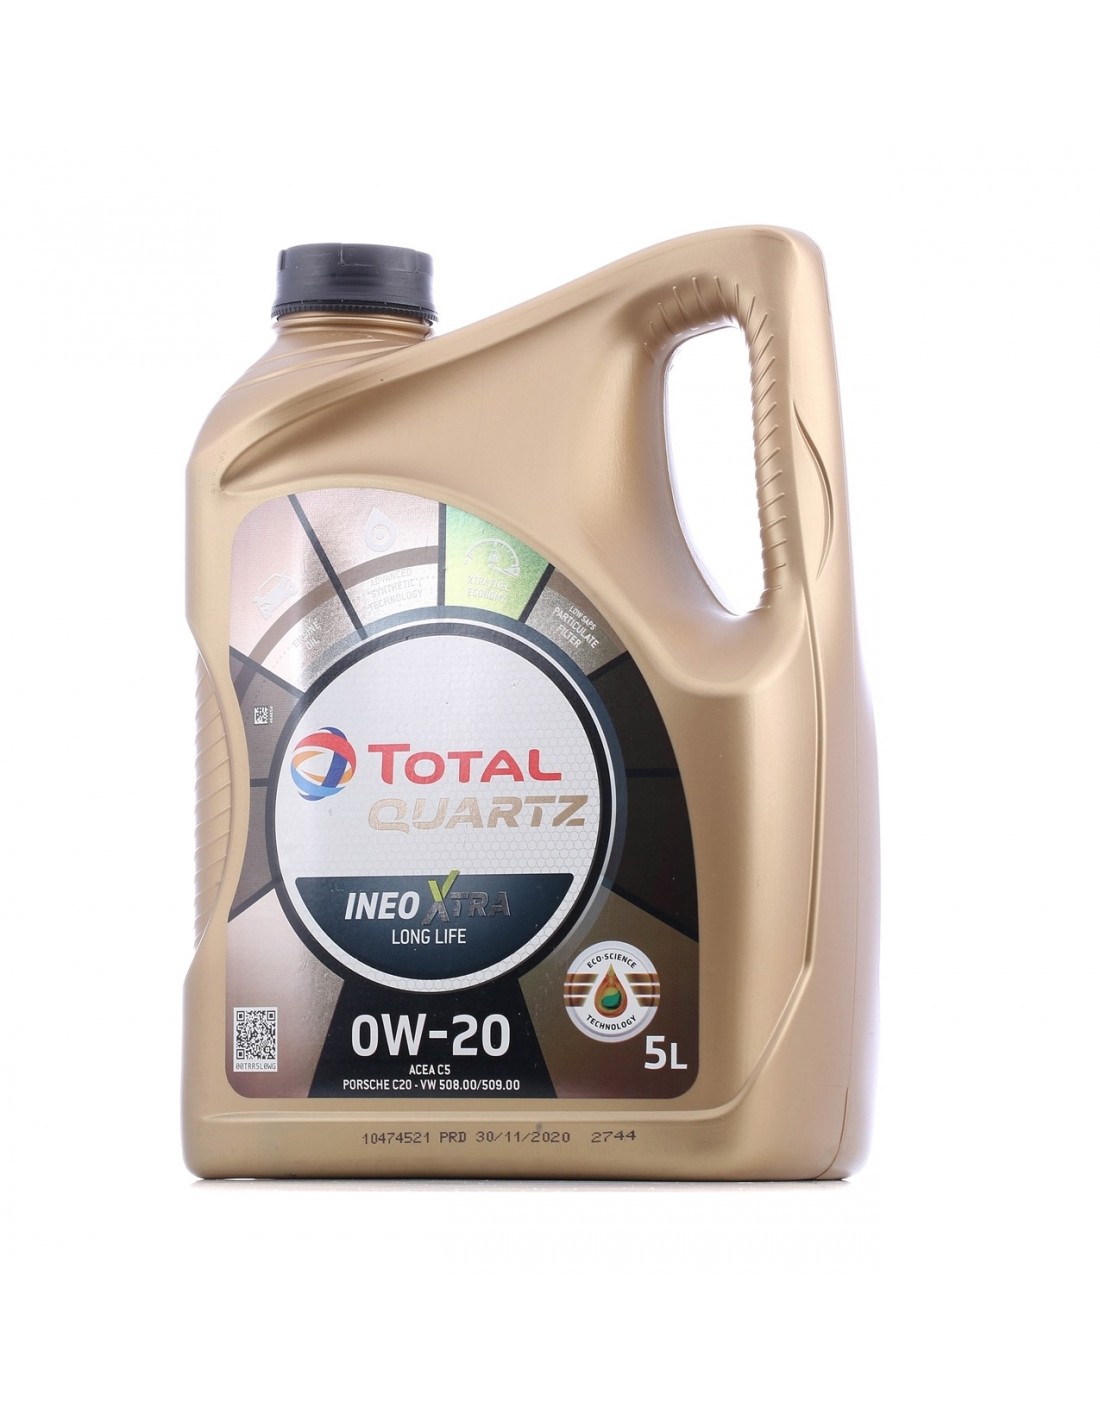 Aceite Total Quartz Ineo Xtra Long Life 0W205L- 50.90€ -   Capacidad 5 Litros